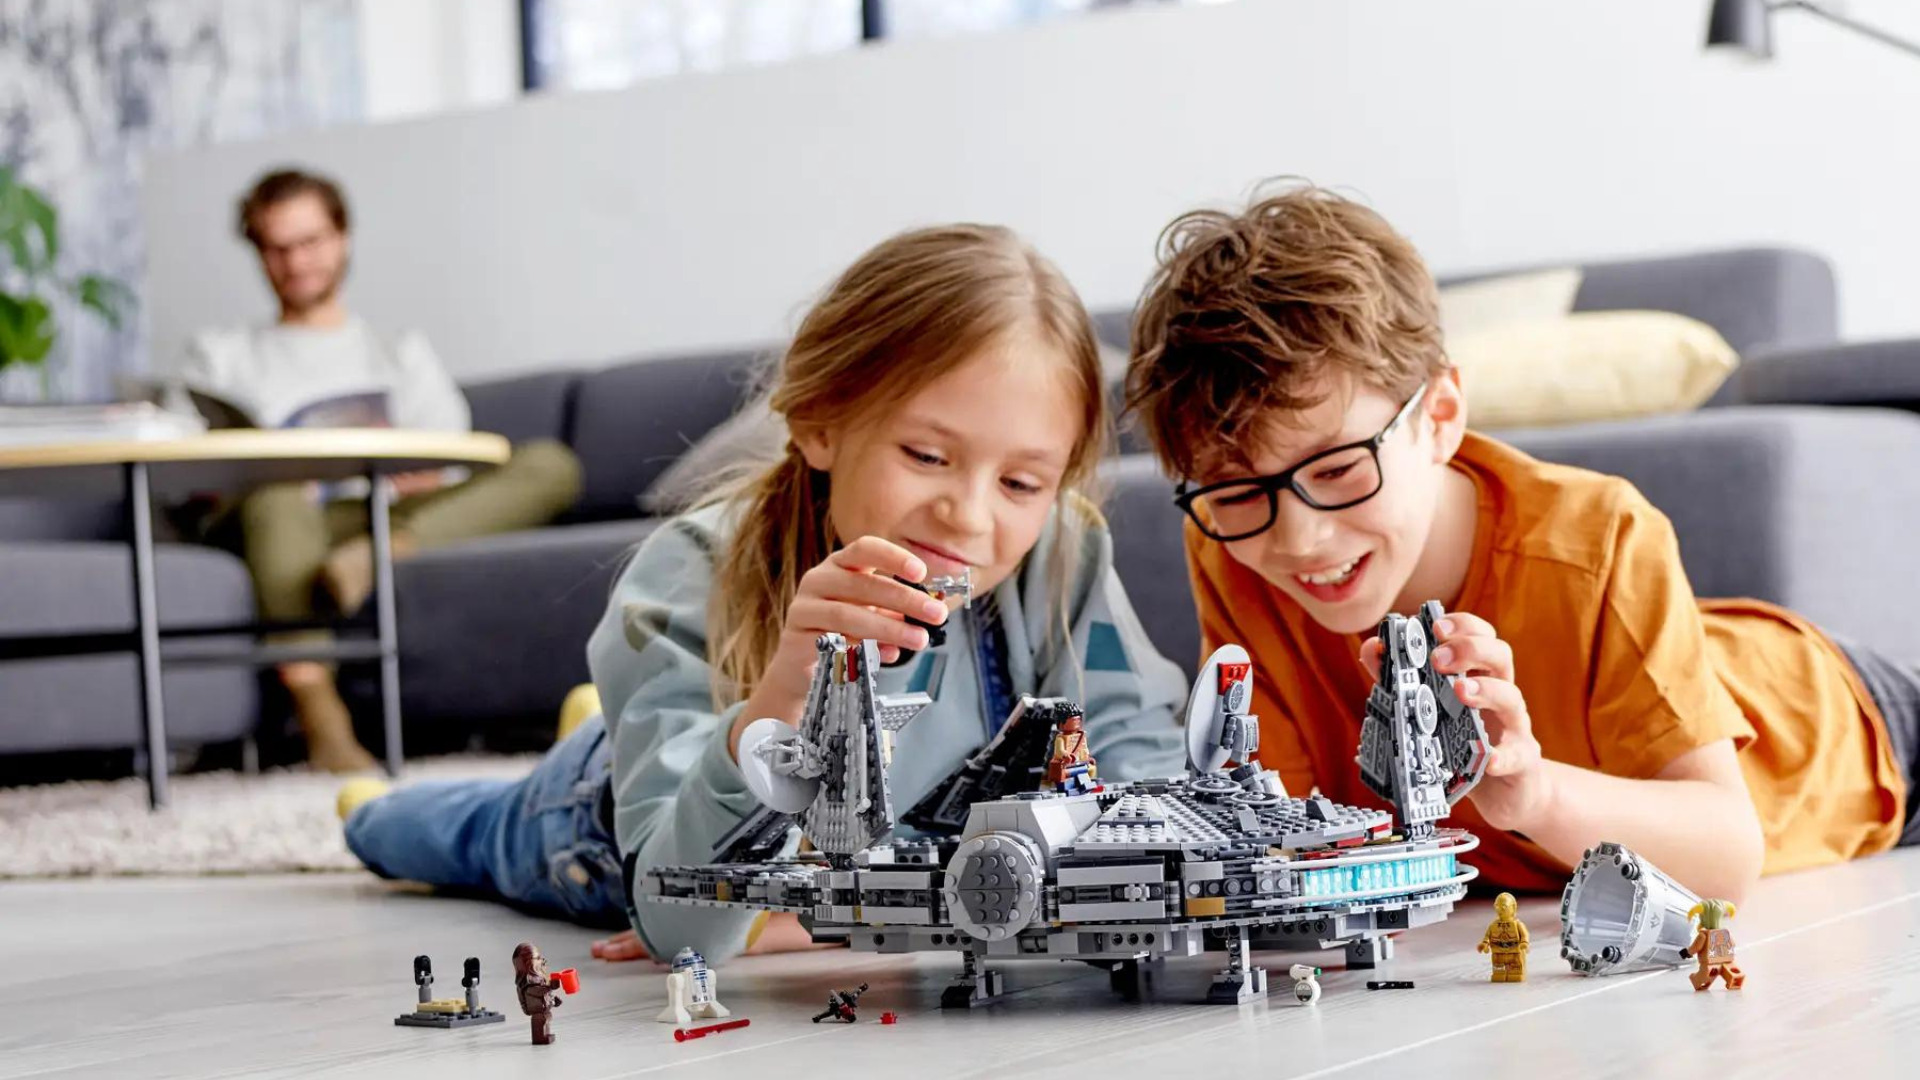 Ces 3 Lego en promotion feront des heureux à Noël - Numerama